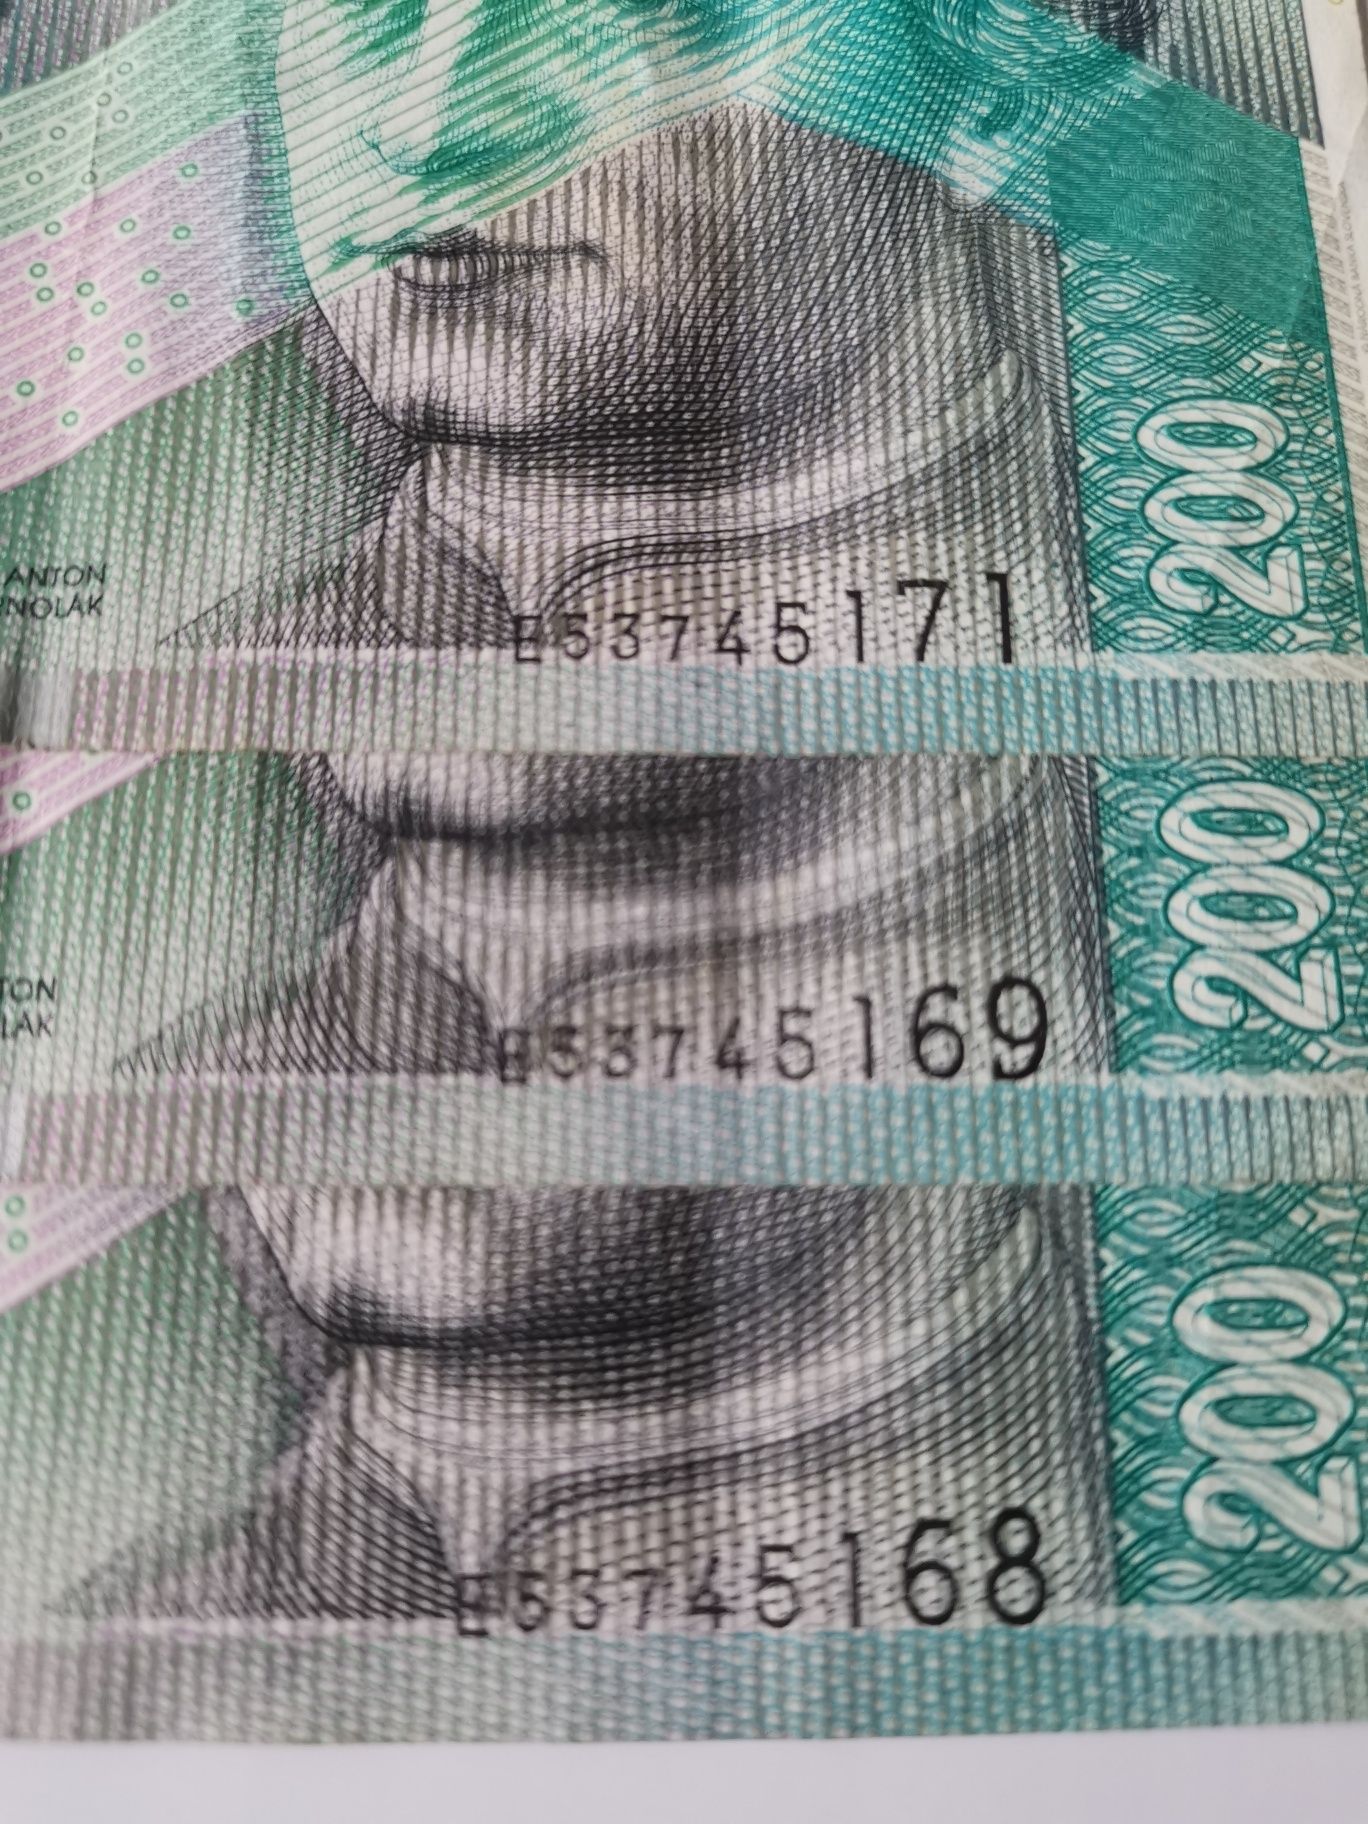 Trzy banknoty po 200 koron słoweńskich z 2002 roku